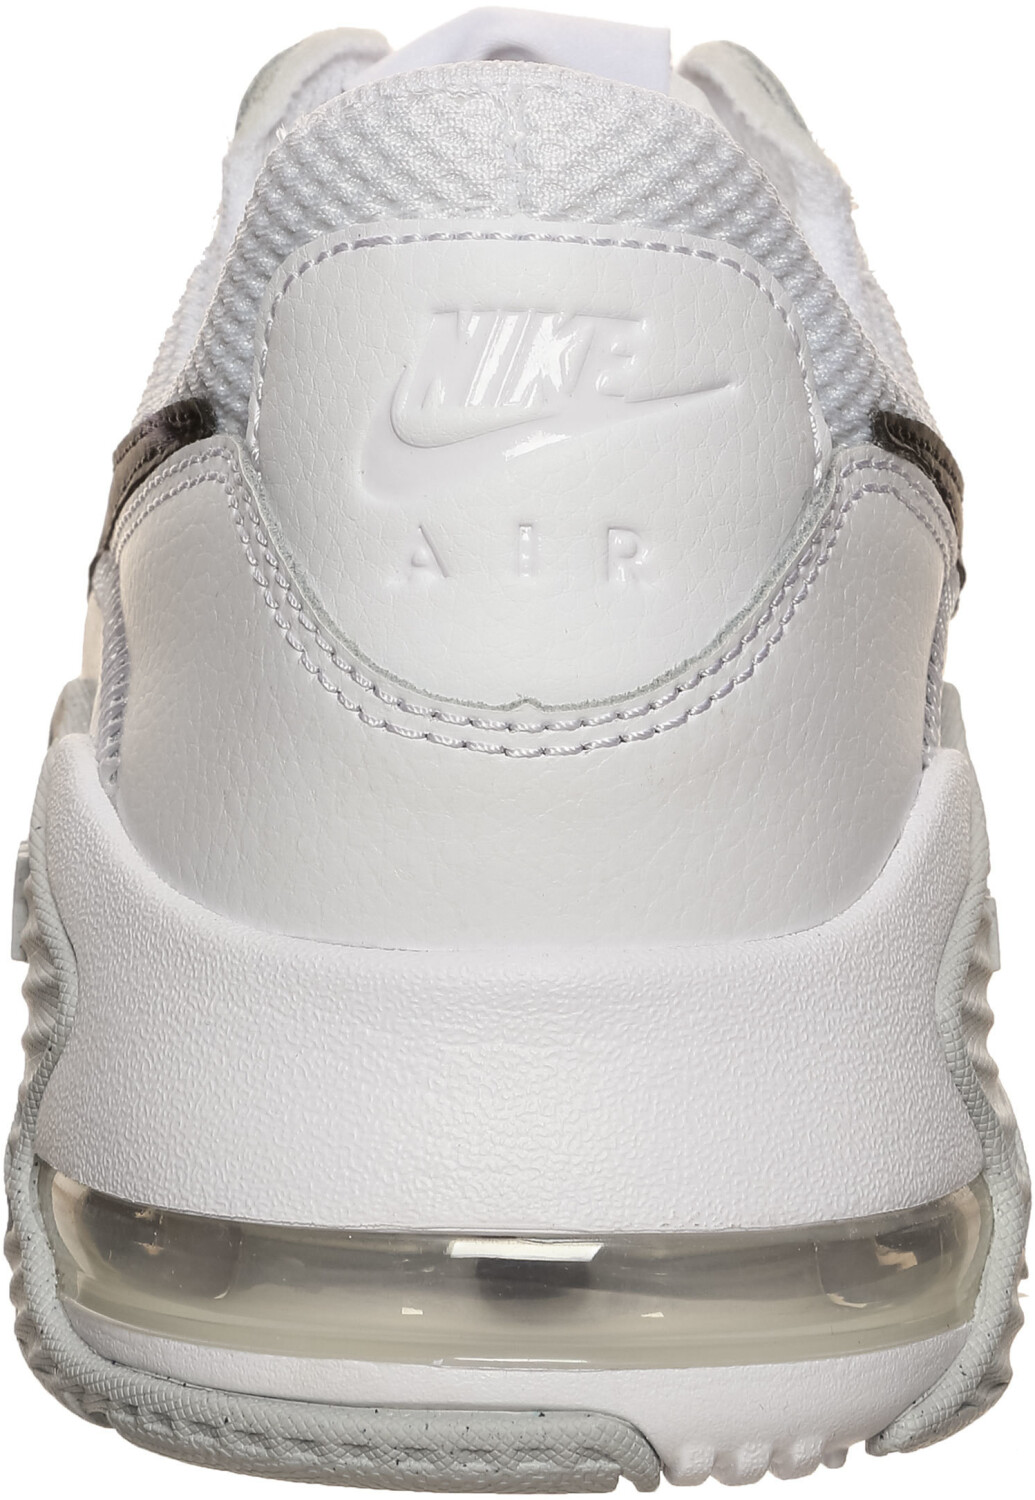 Nike Air Max Excee white/pure platinum/black au meilleur prix sur idealo.fr